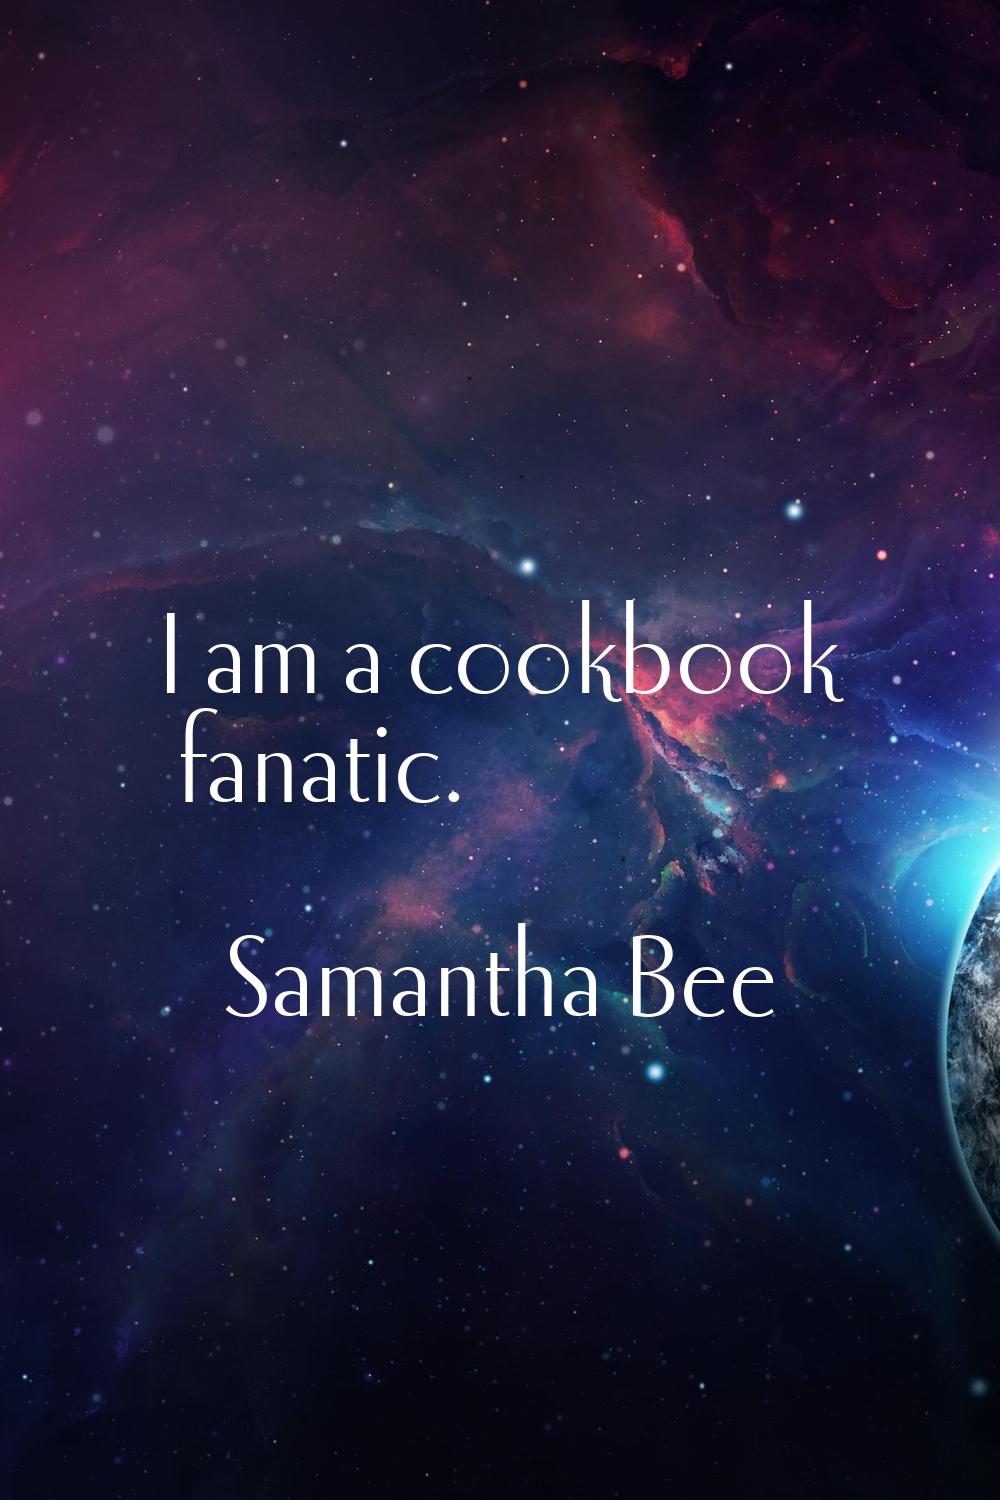 I am a cookbook fanatic.